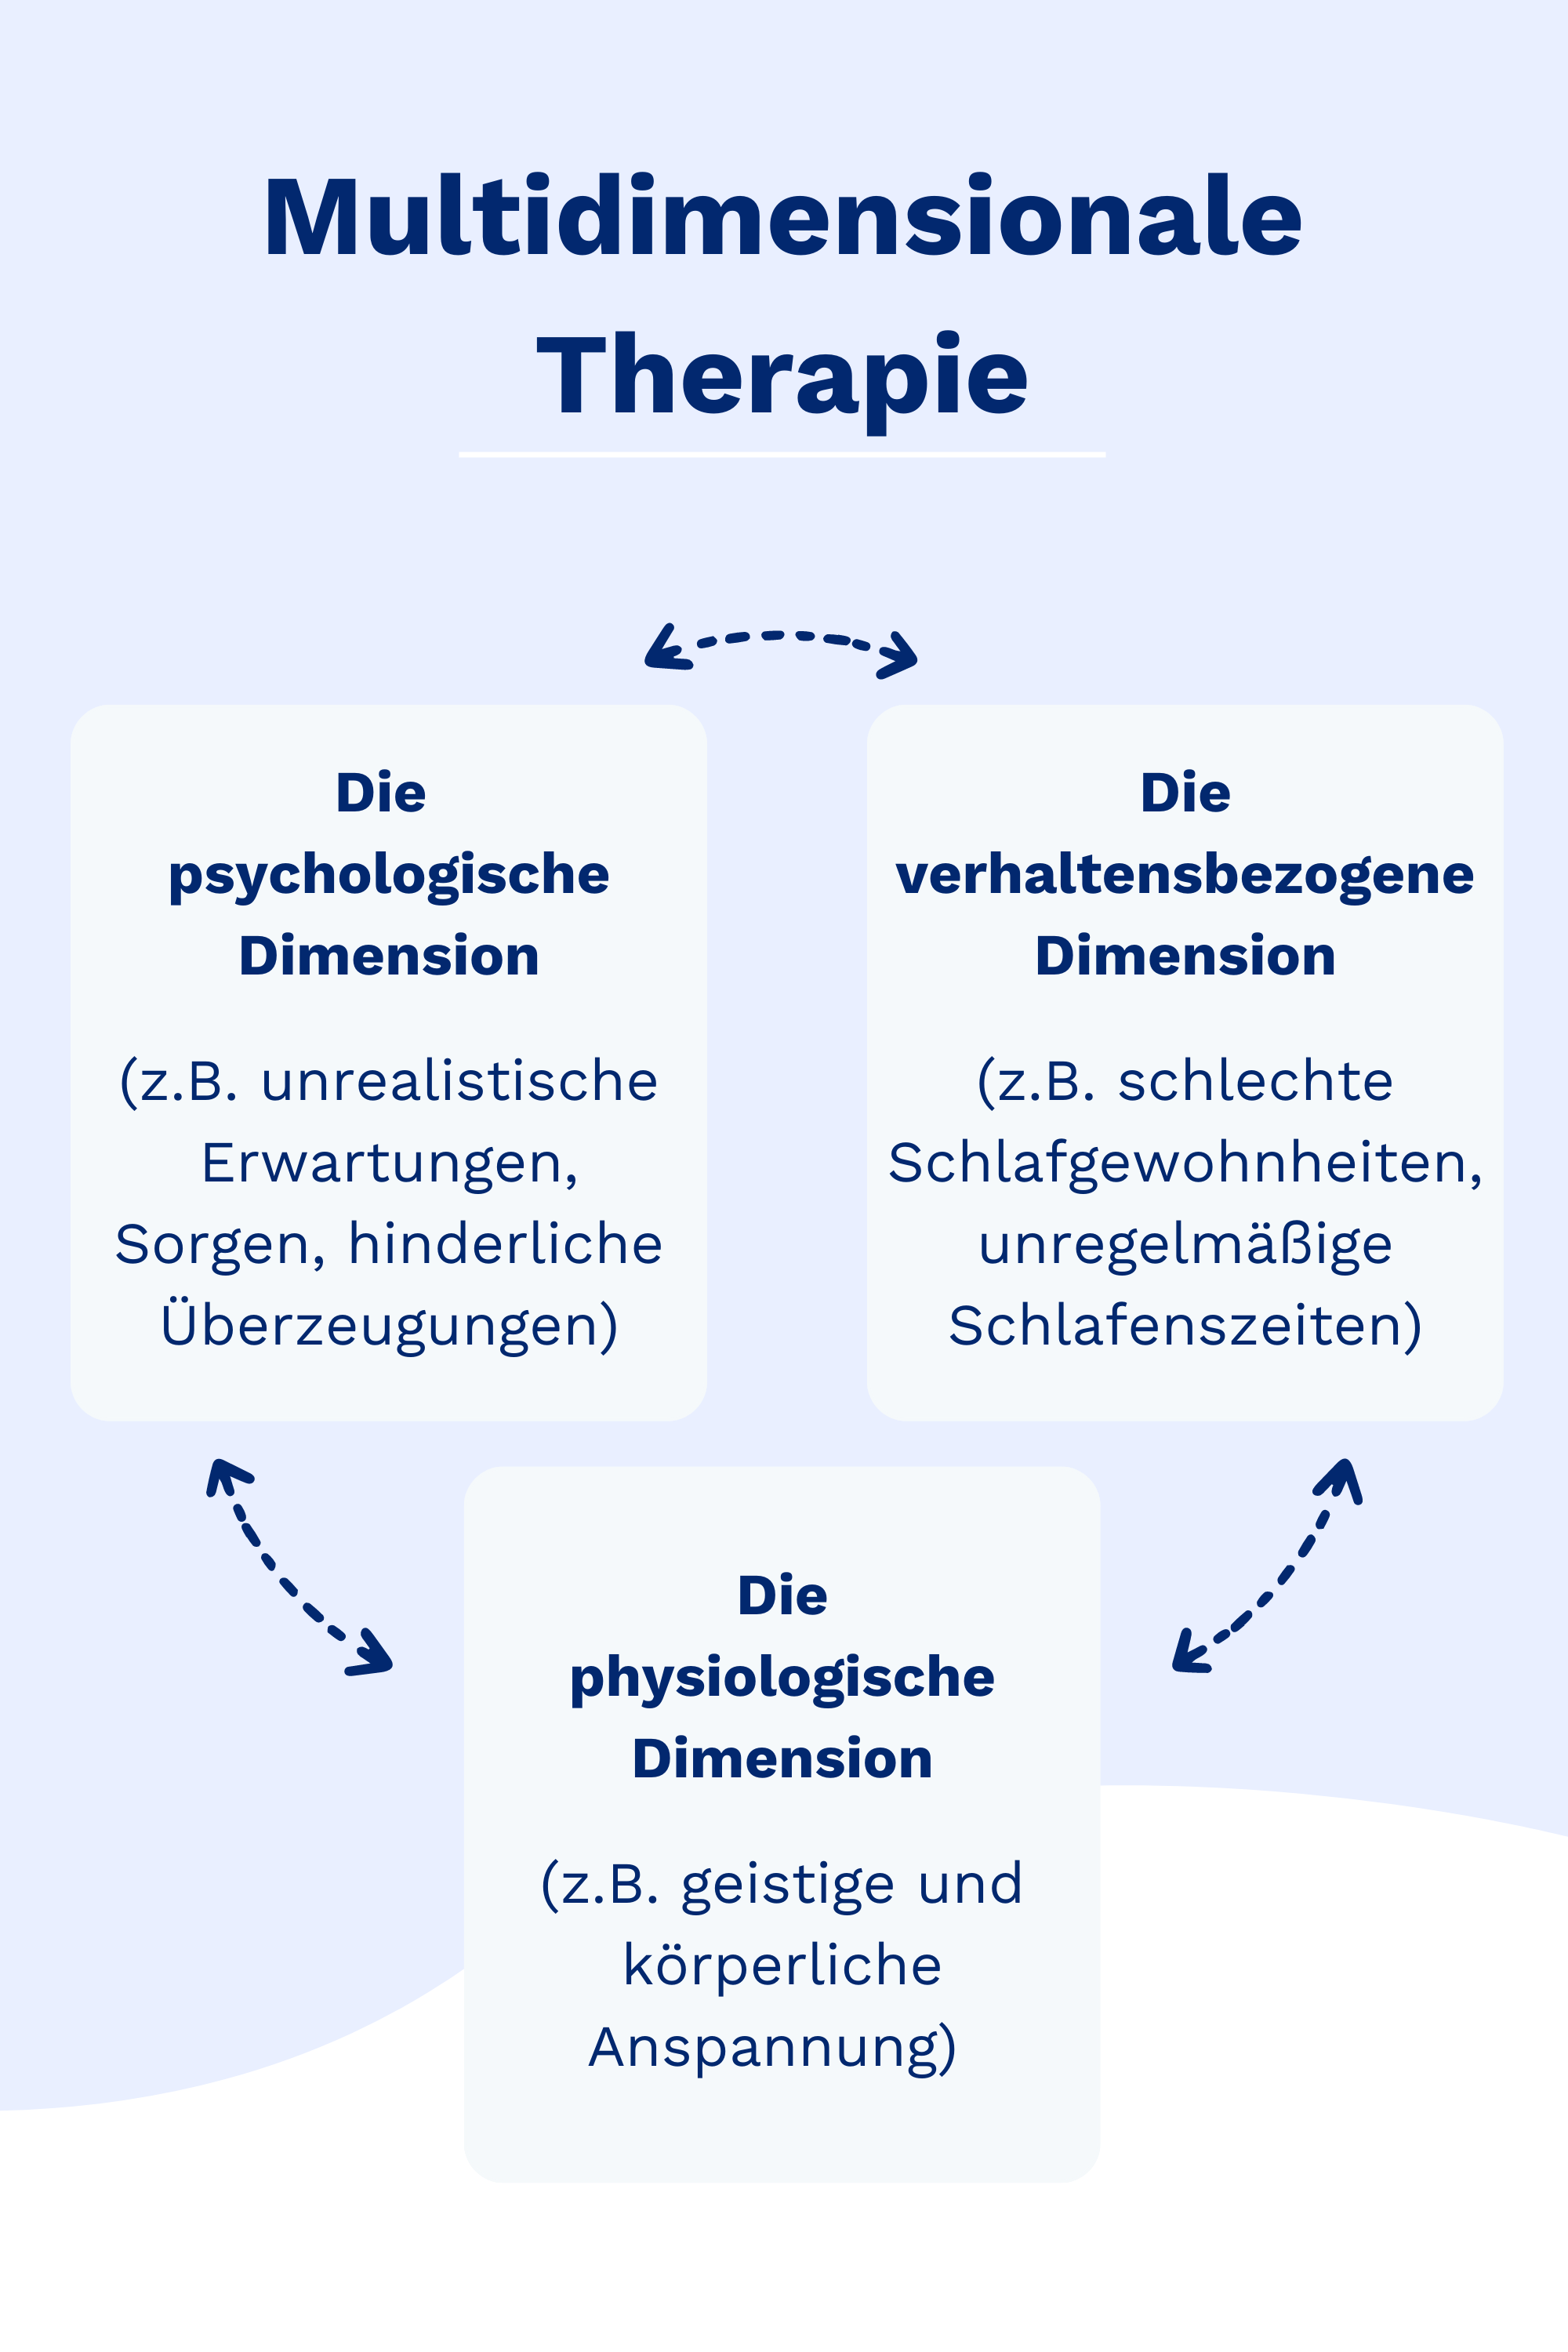 Erläuternde Grafik der multidimensionale Therapie mit den Dimensionen psychologisch, personenbezogen und physiologisch